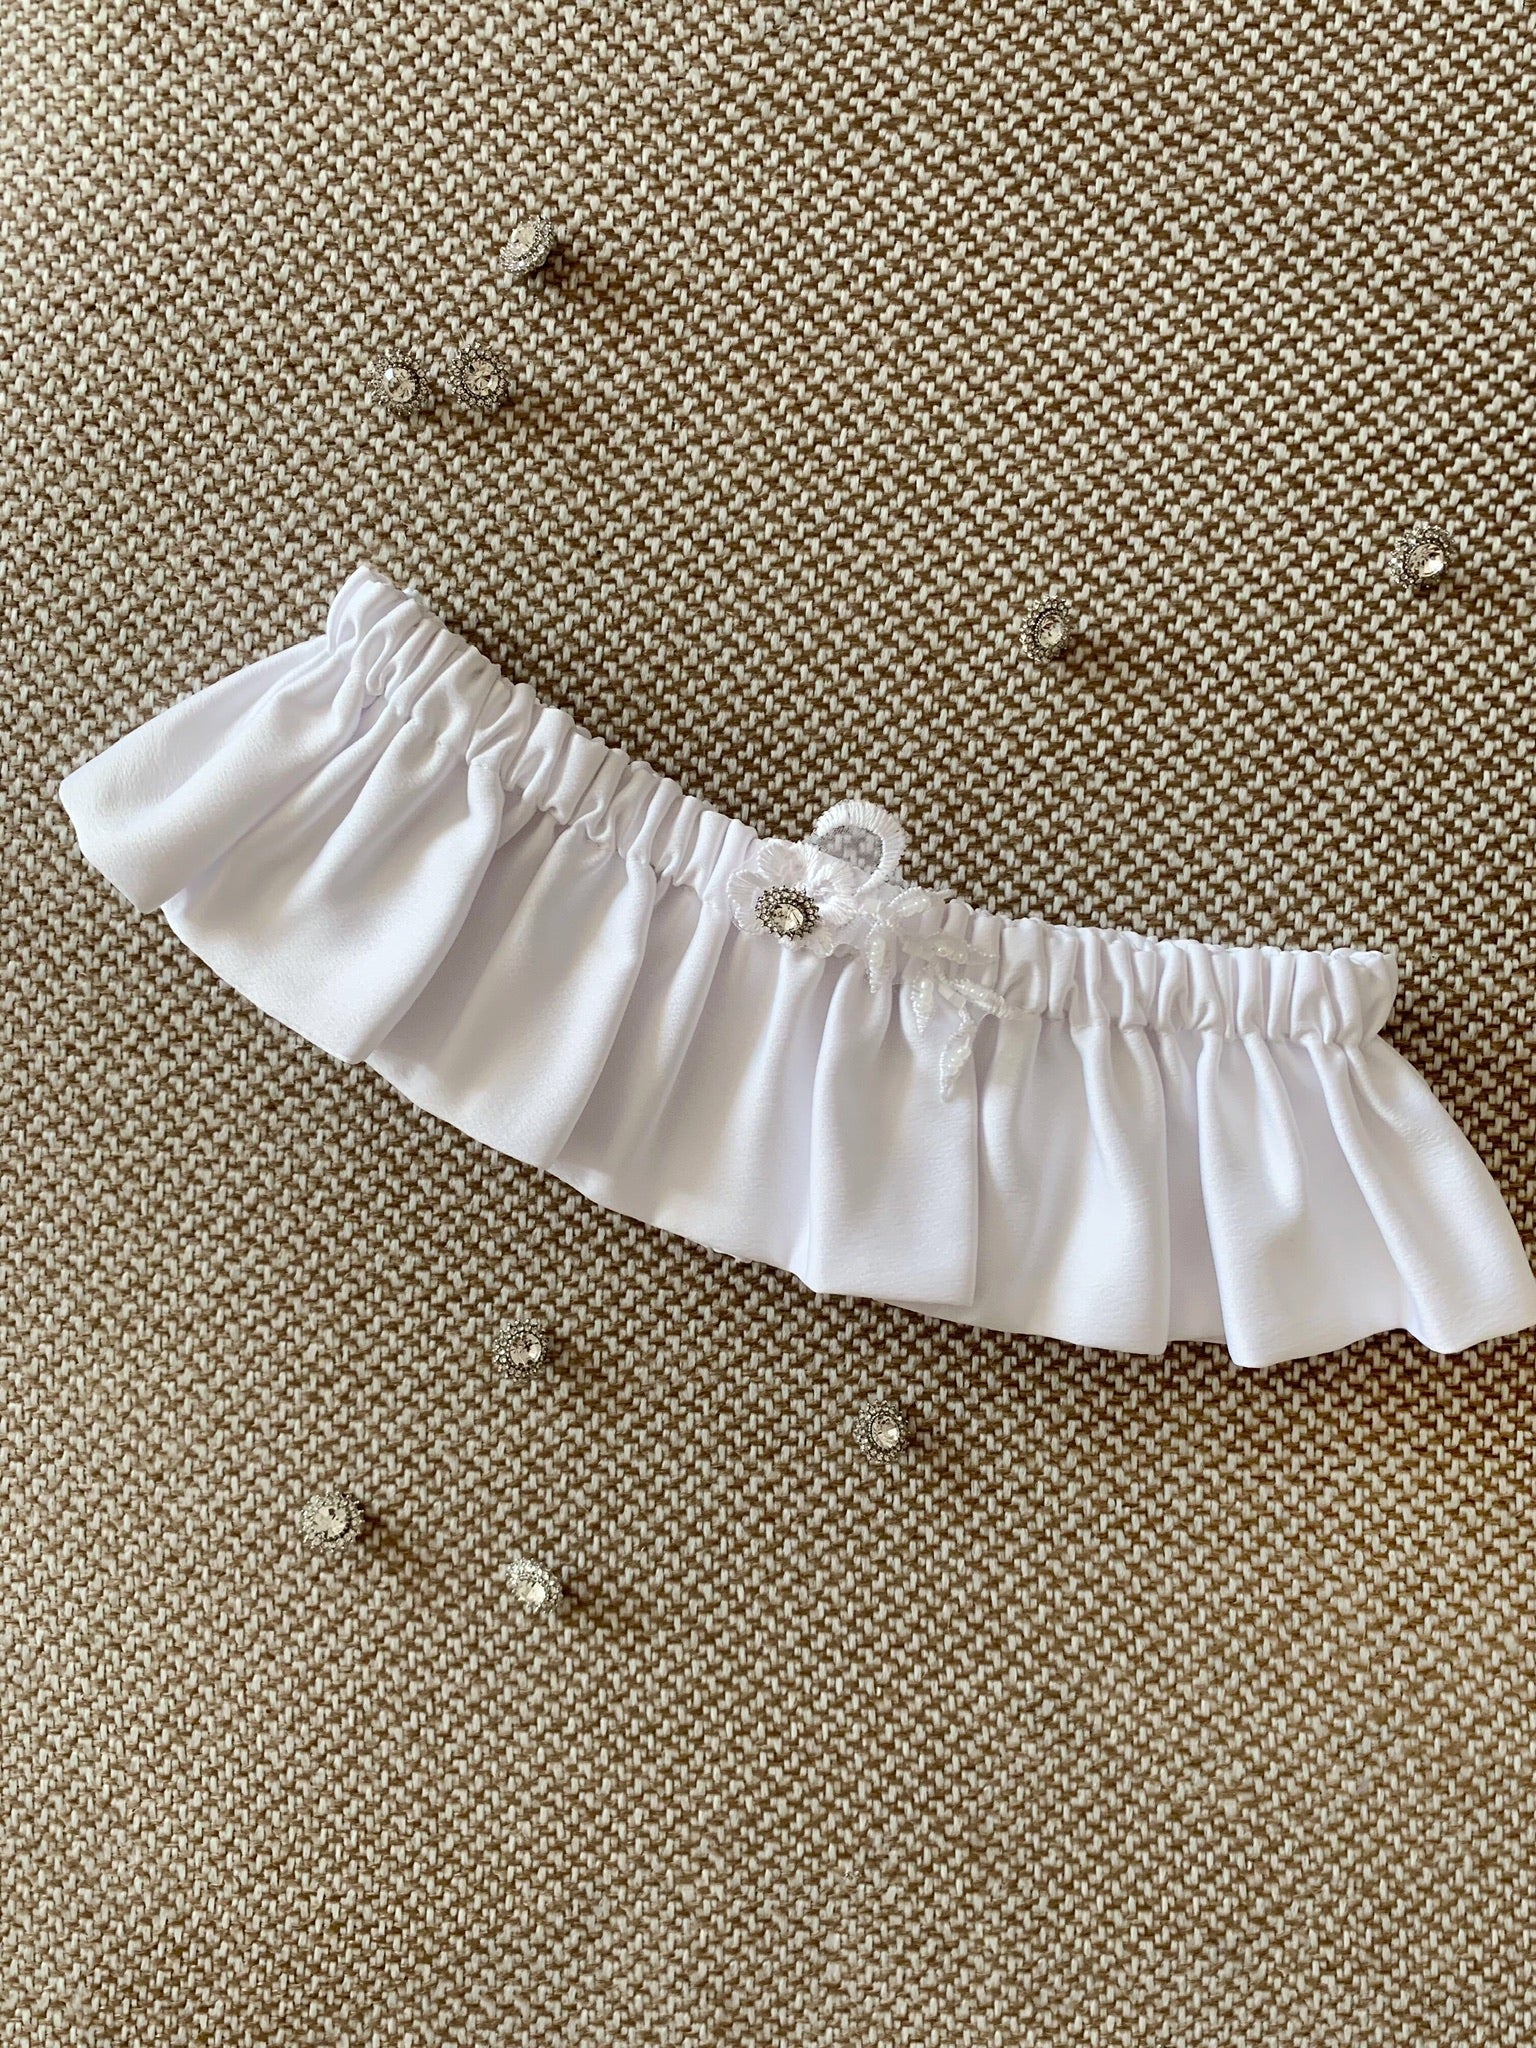 Wedding leg garter White Handmade